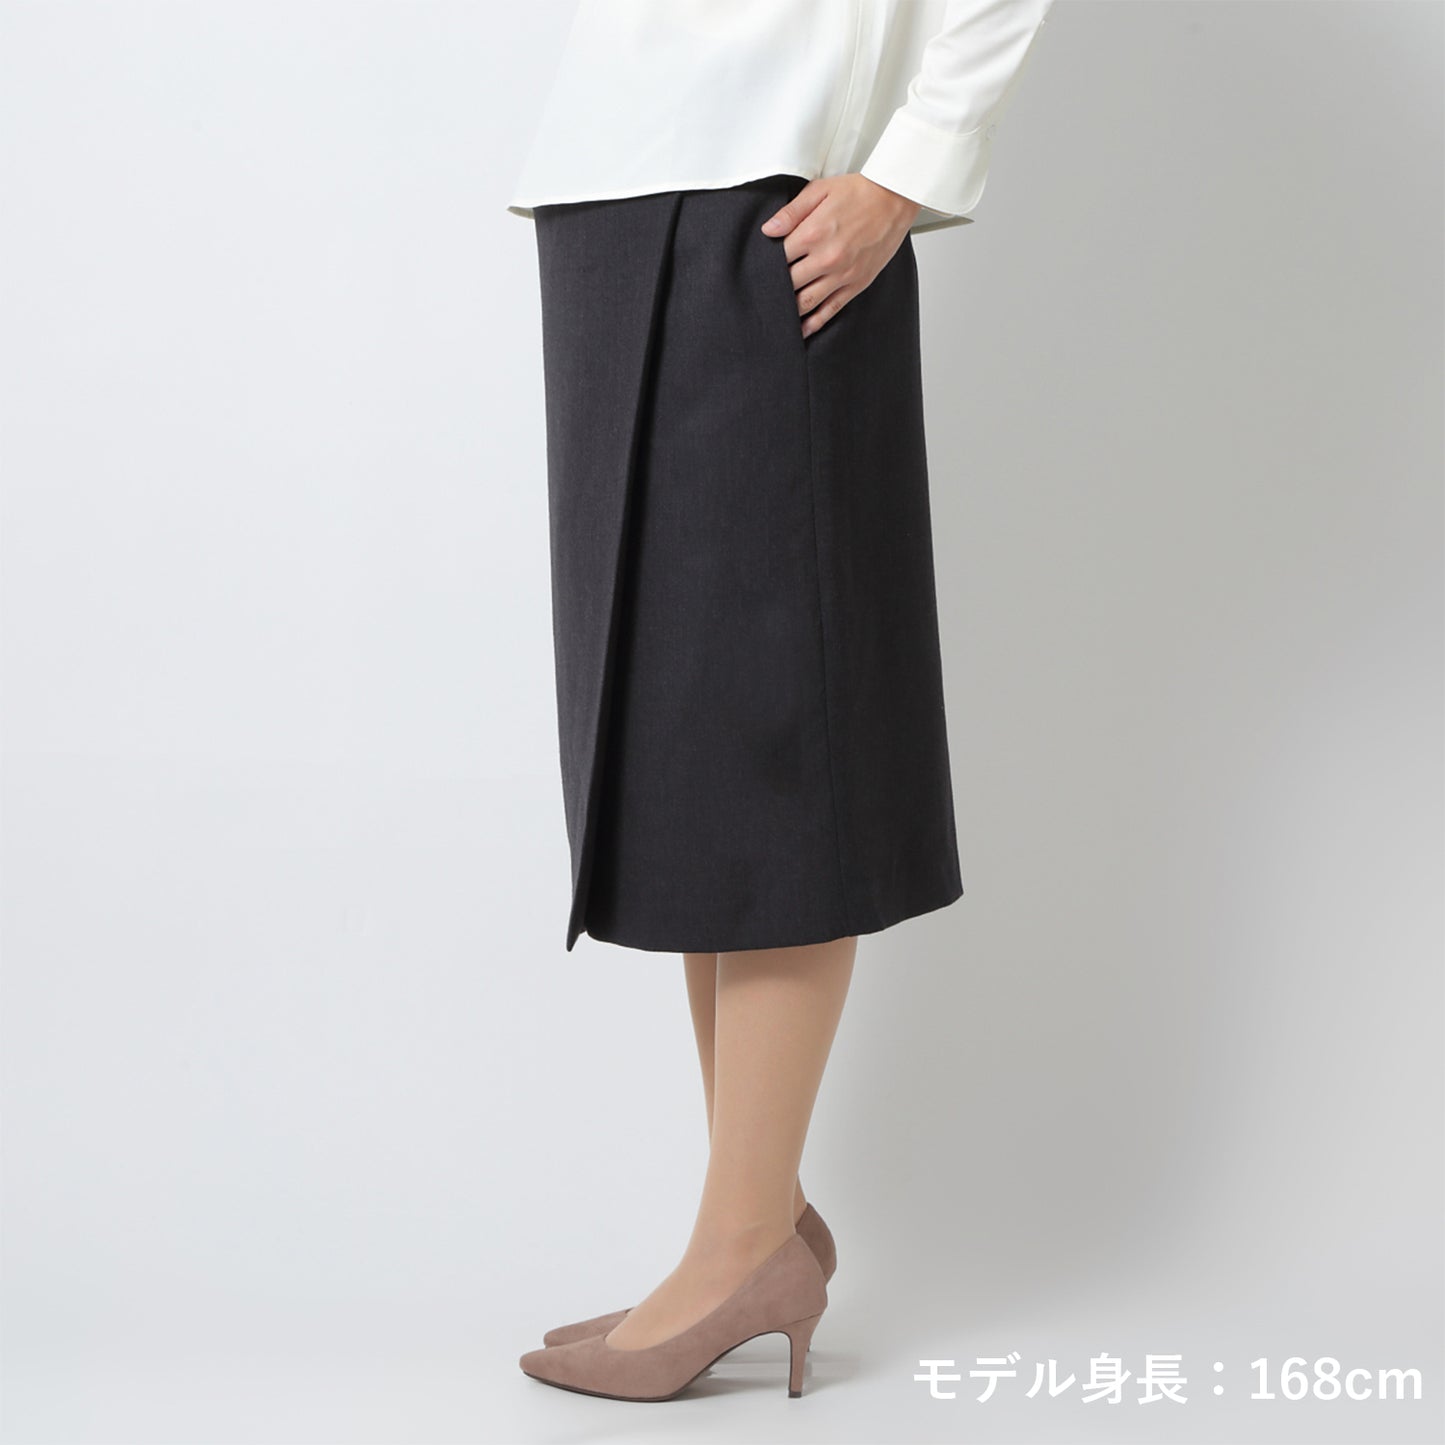 ストレッチウールマタニティラップスカート(model:168cm 着用サイズ:SM)